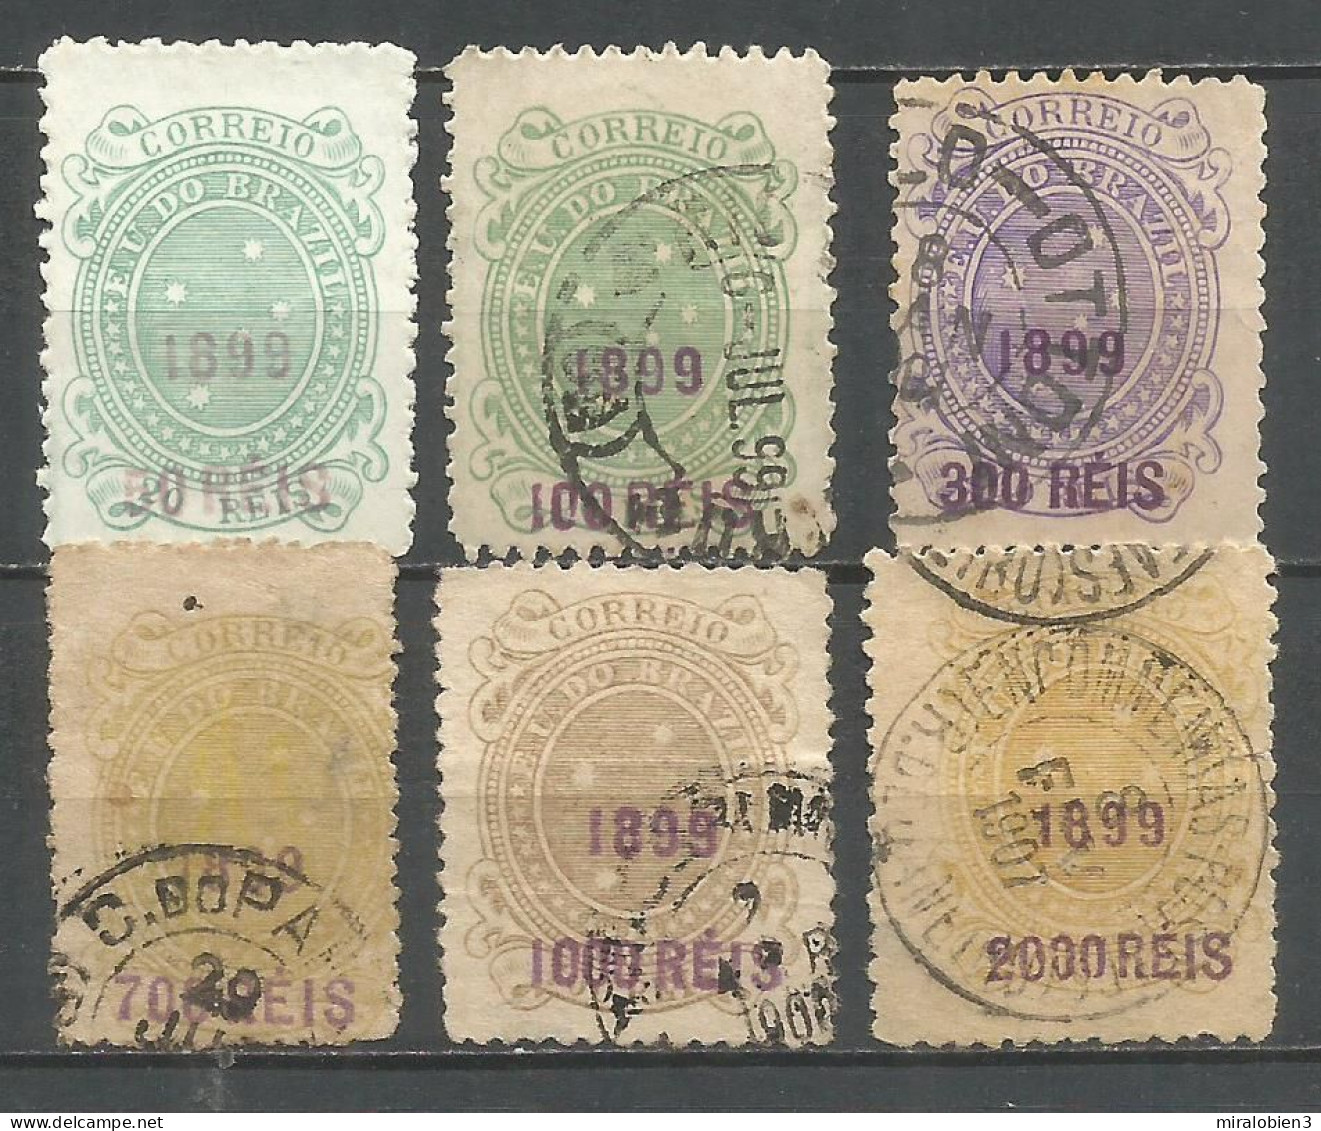 BRASIL REPUBLICA 1899 CONJUNTO DE SELLOS USADOS - Oblitérés